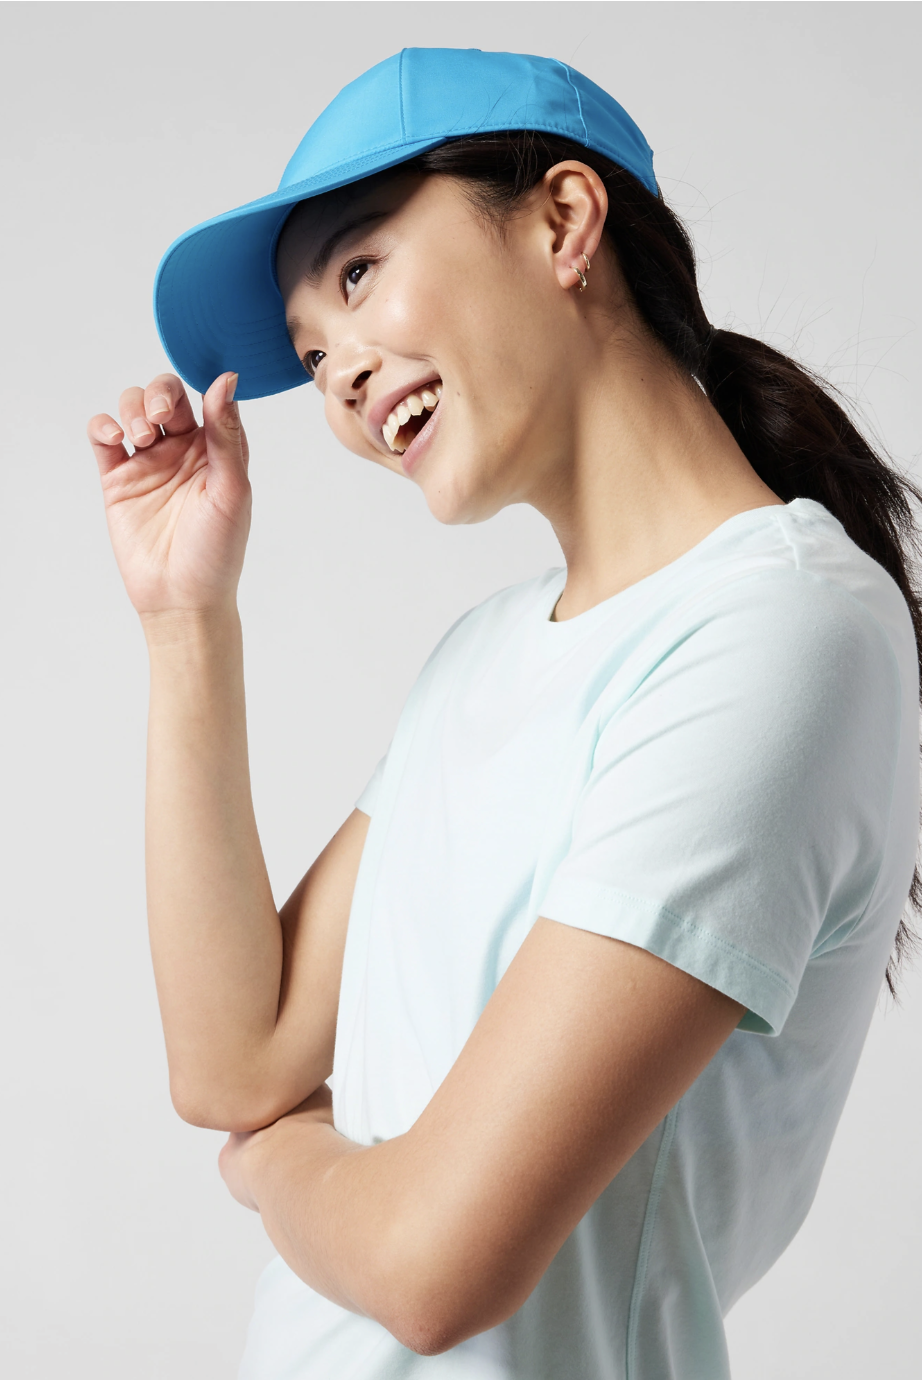 Baseball Caps for Women